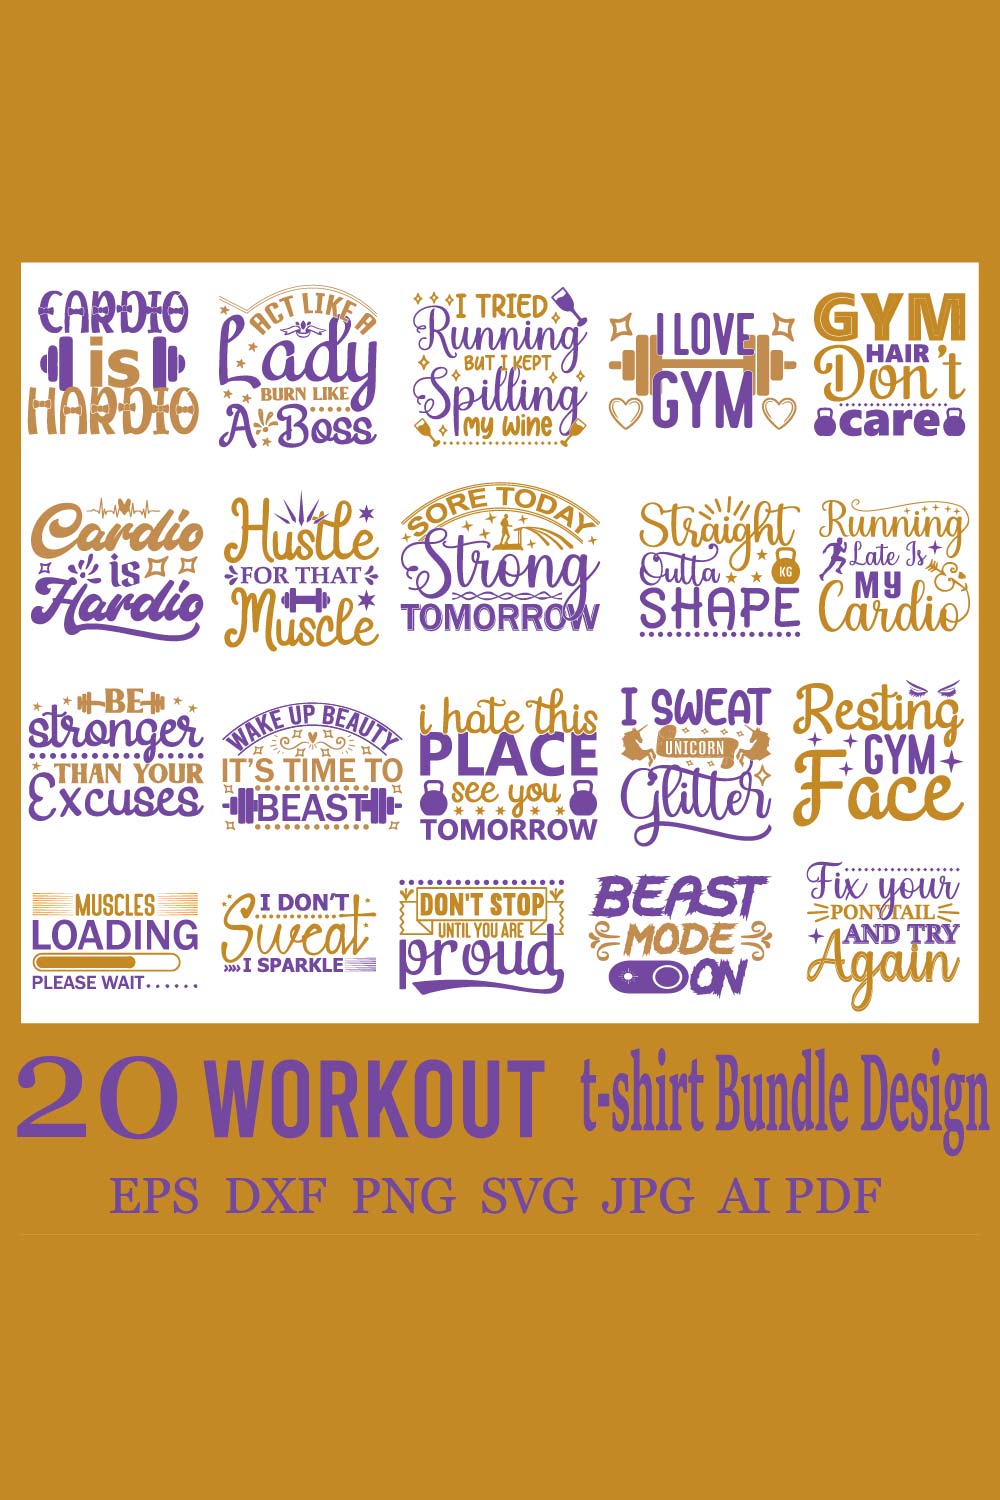 Workout SVG Bundle Design pinterest image.